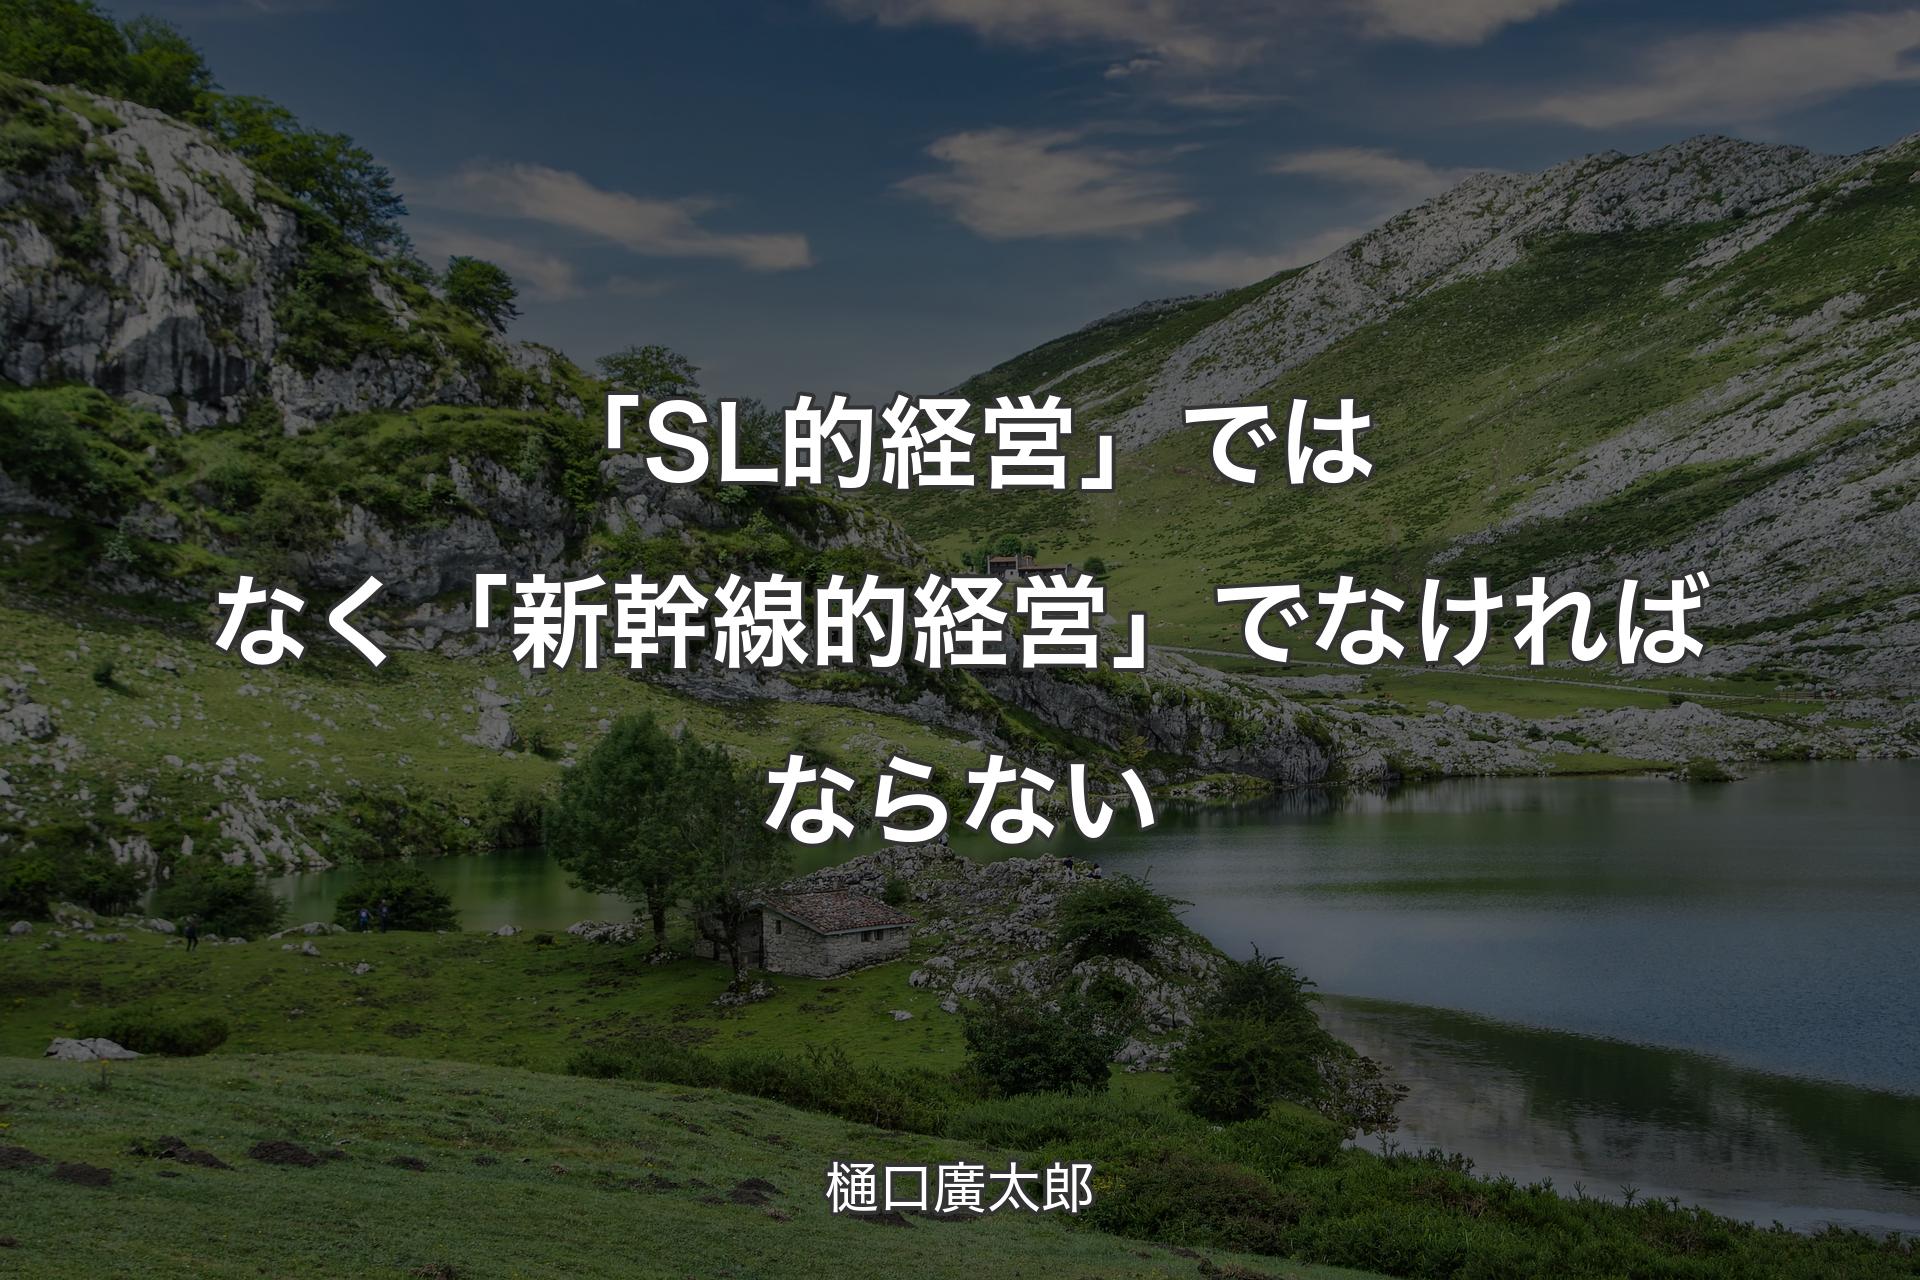 【背景1】「SL的経営」ではなく「新幹線的経営」でなければならない - 樋口廣太郎